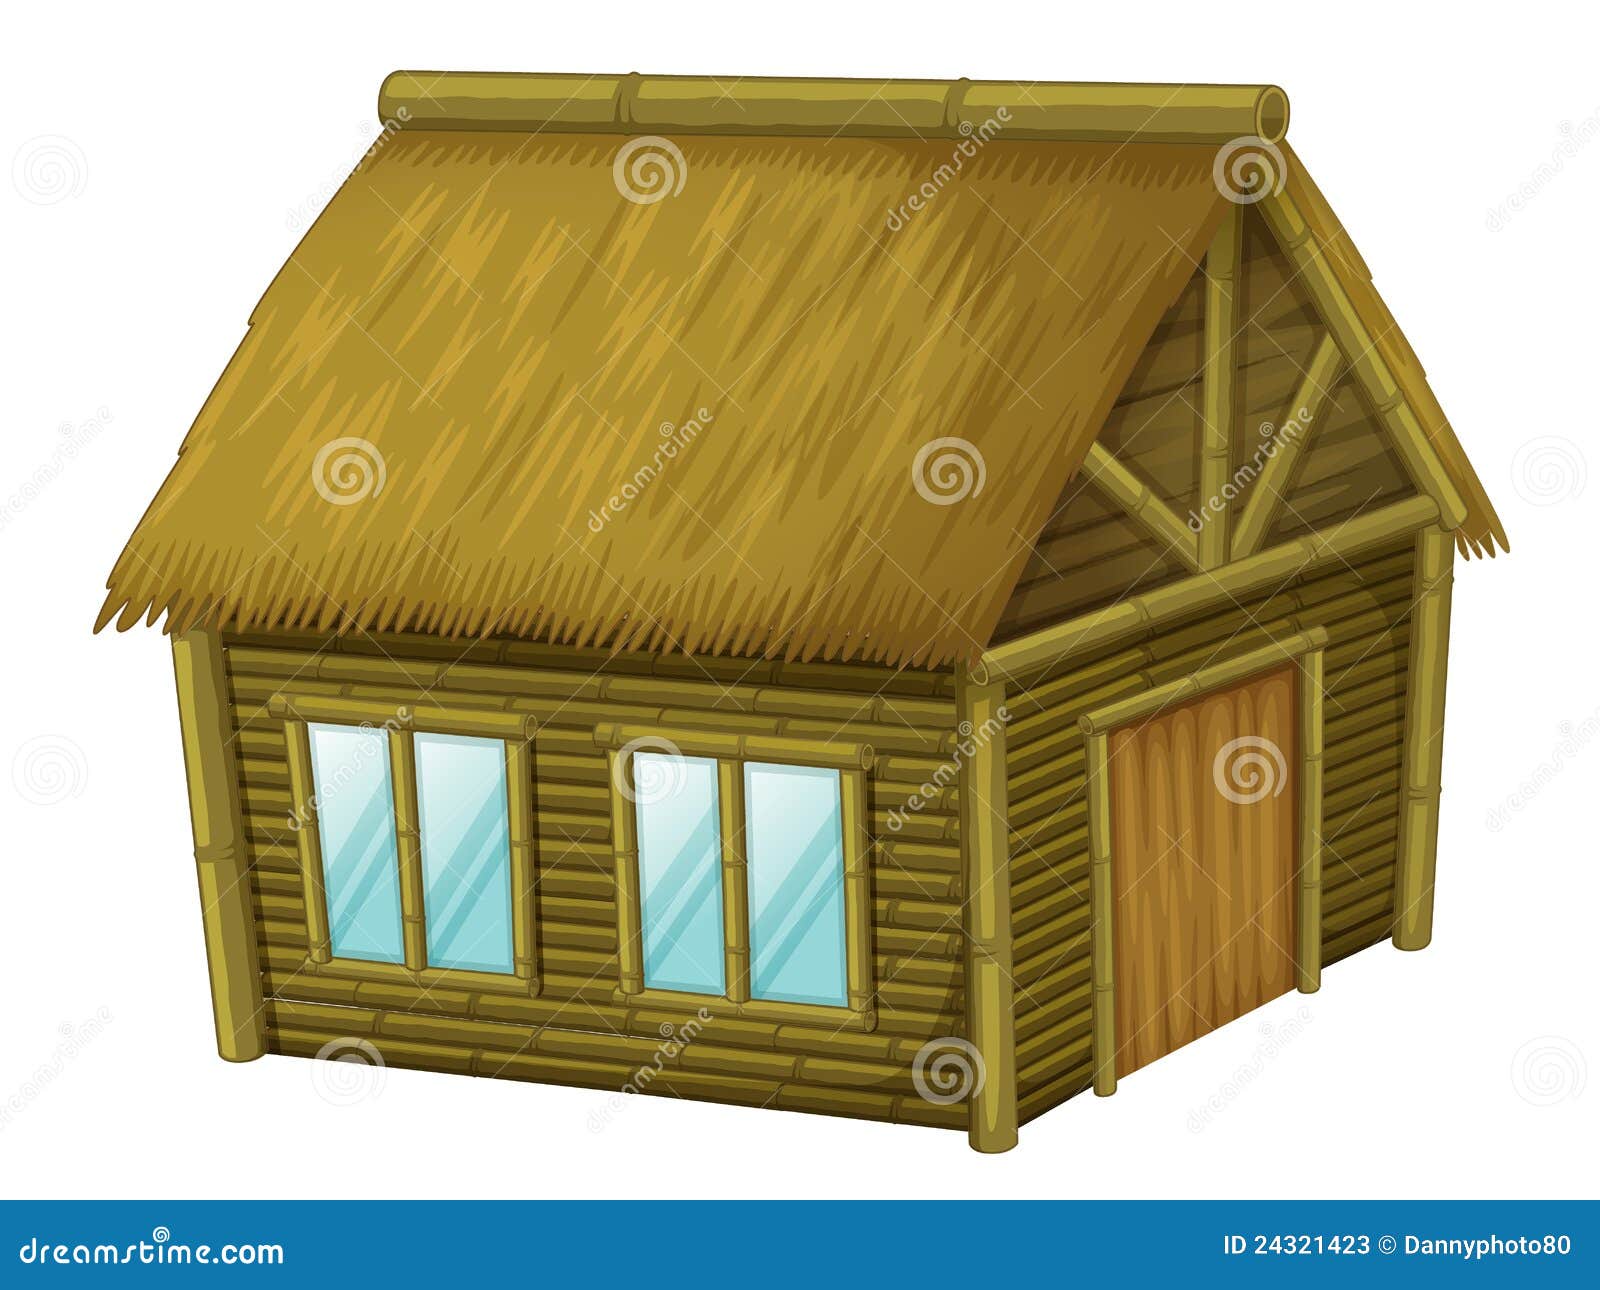 Cartoon hut stock vector. Illustration of cartoon, isolated - 24321423